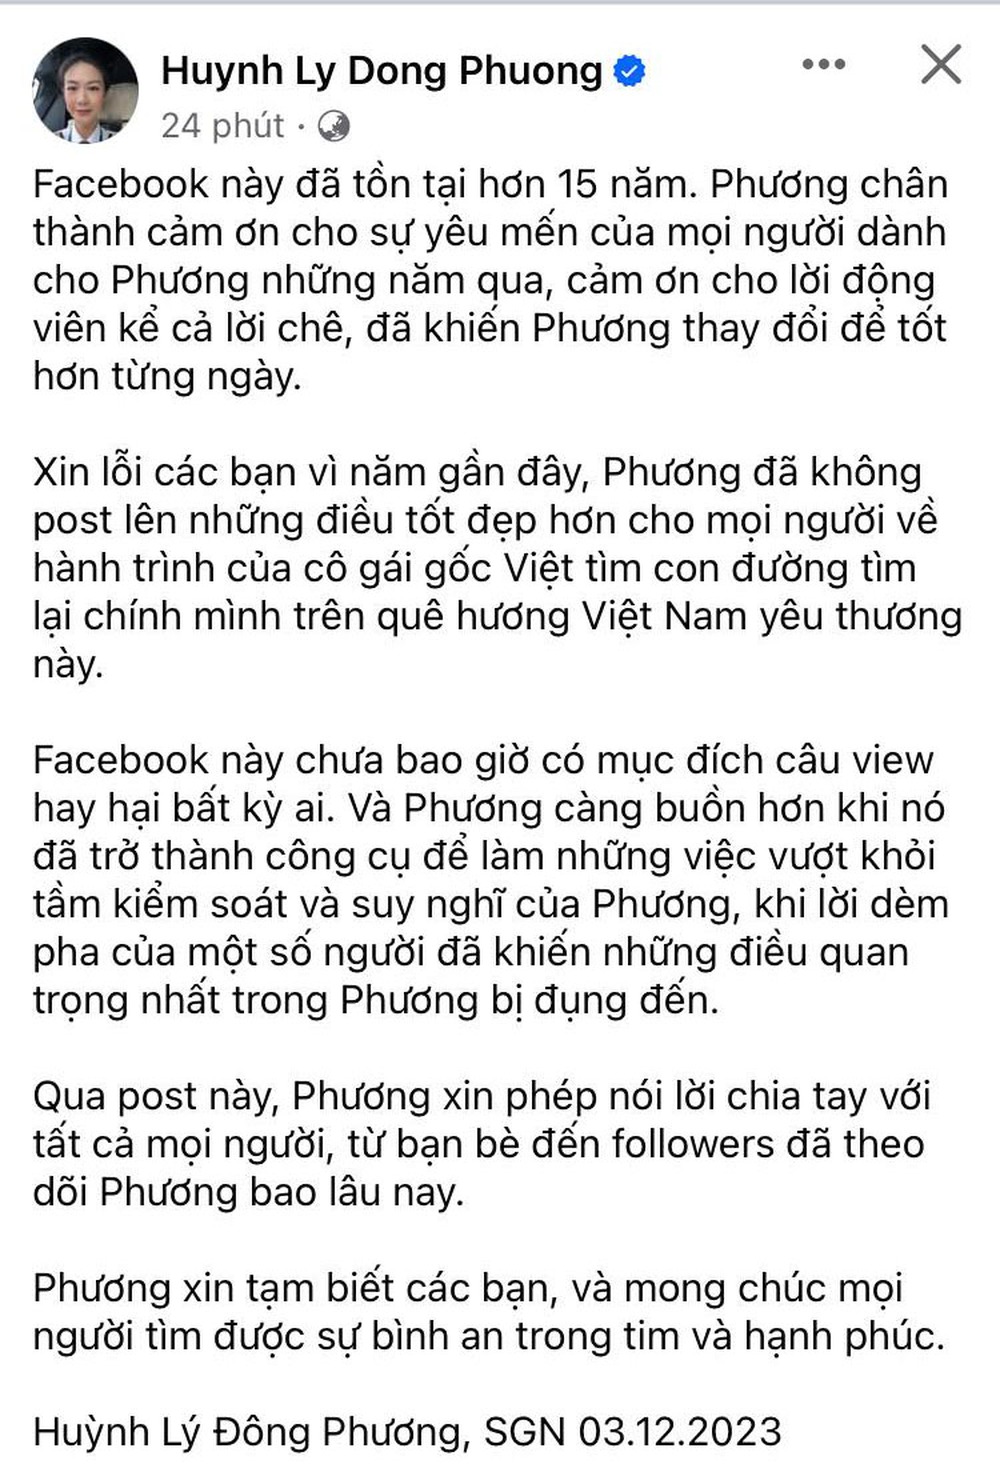 Nữ cơ trưởng Huỳnh Lý Đông Phương tuyên bố &quot;chia tay mọi người&quot;, hé lộ chi tiết bất ổn khiến fan lo lắng - Ảnh 4.